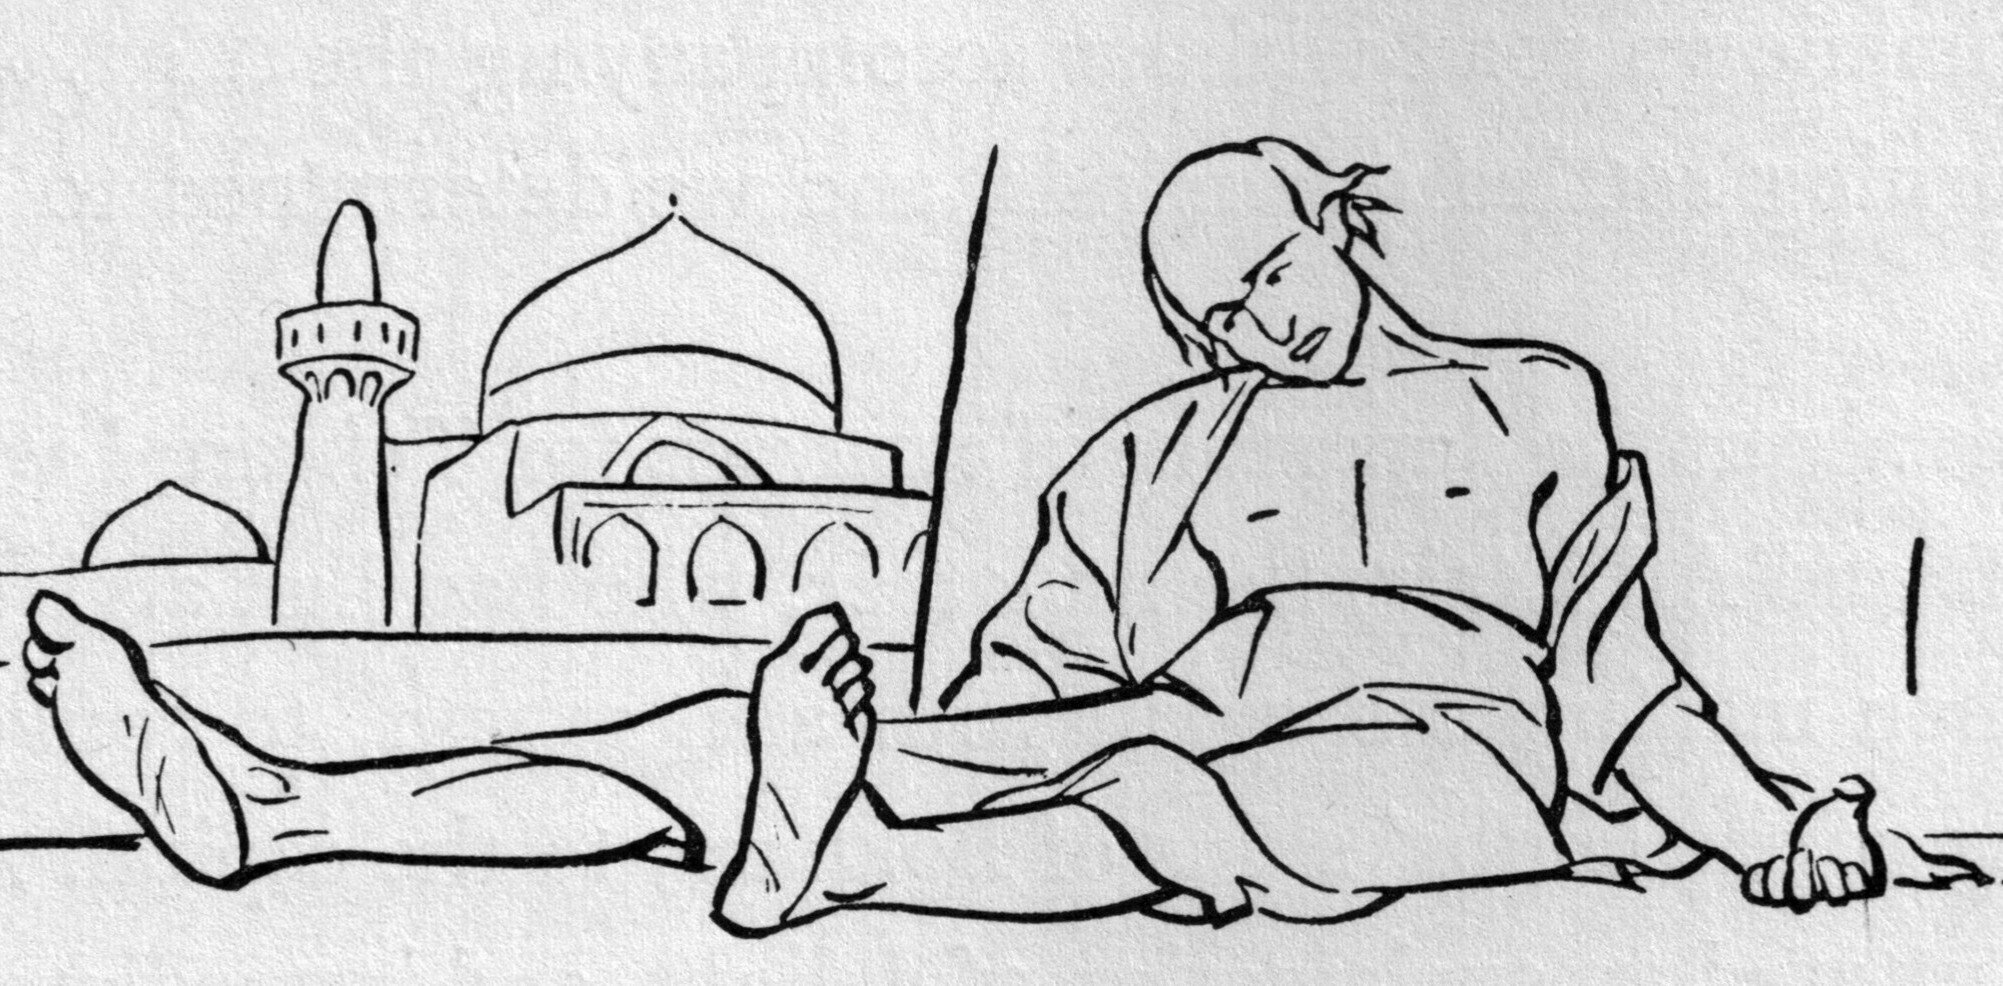 Hajji-Baba-ch-12-illustration-wo-text.jpg